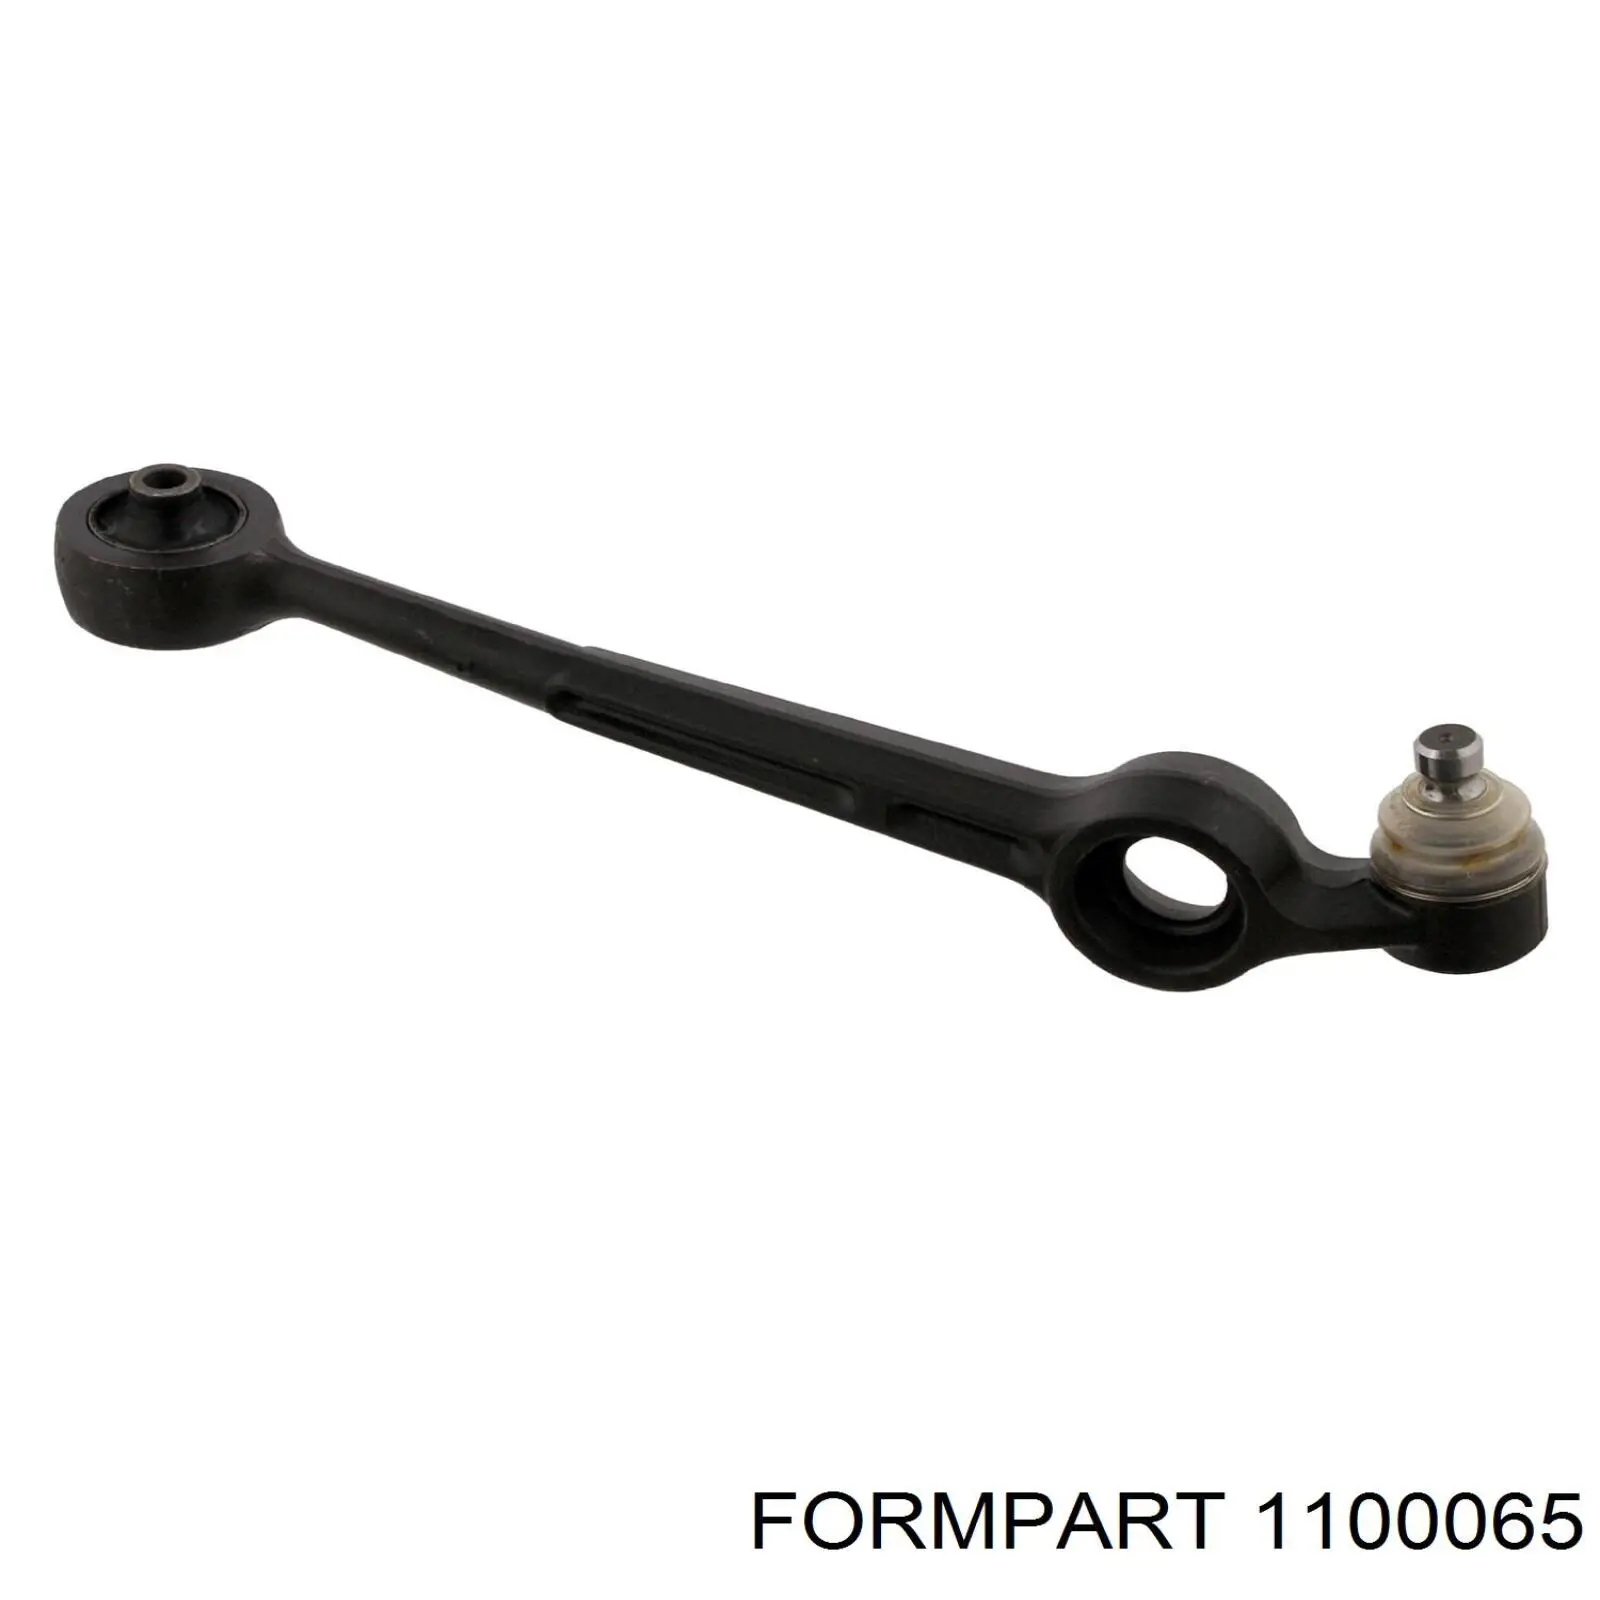 1100065 Formpart/Otoform silentblock de suspensión delantero inferior